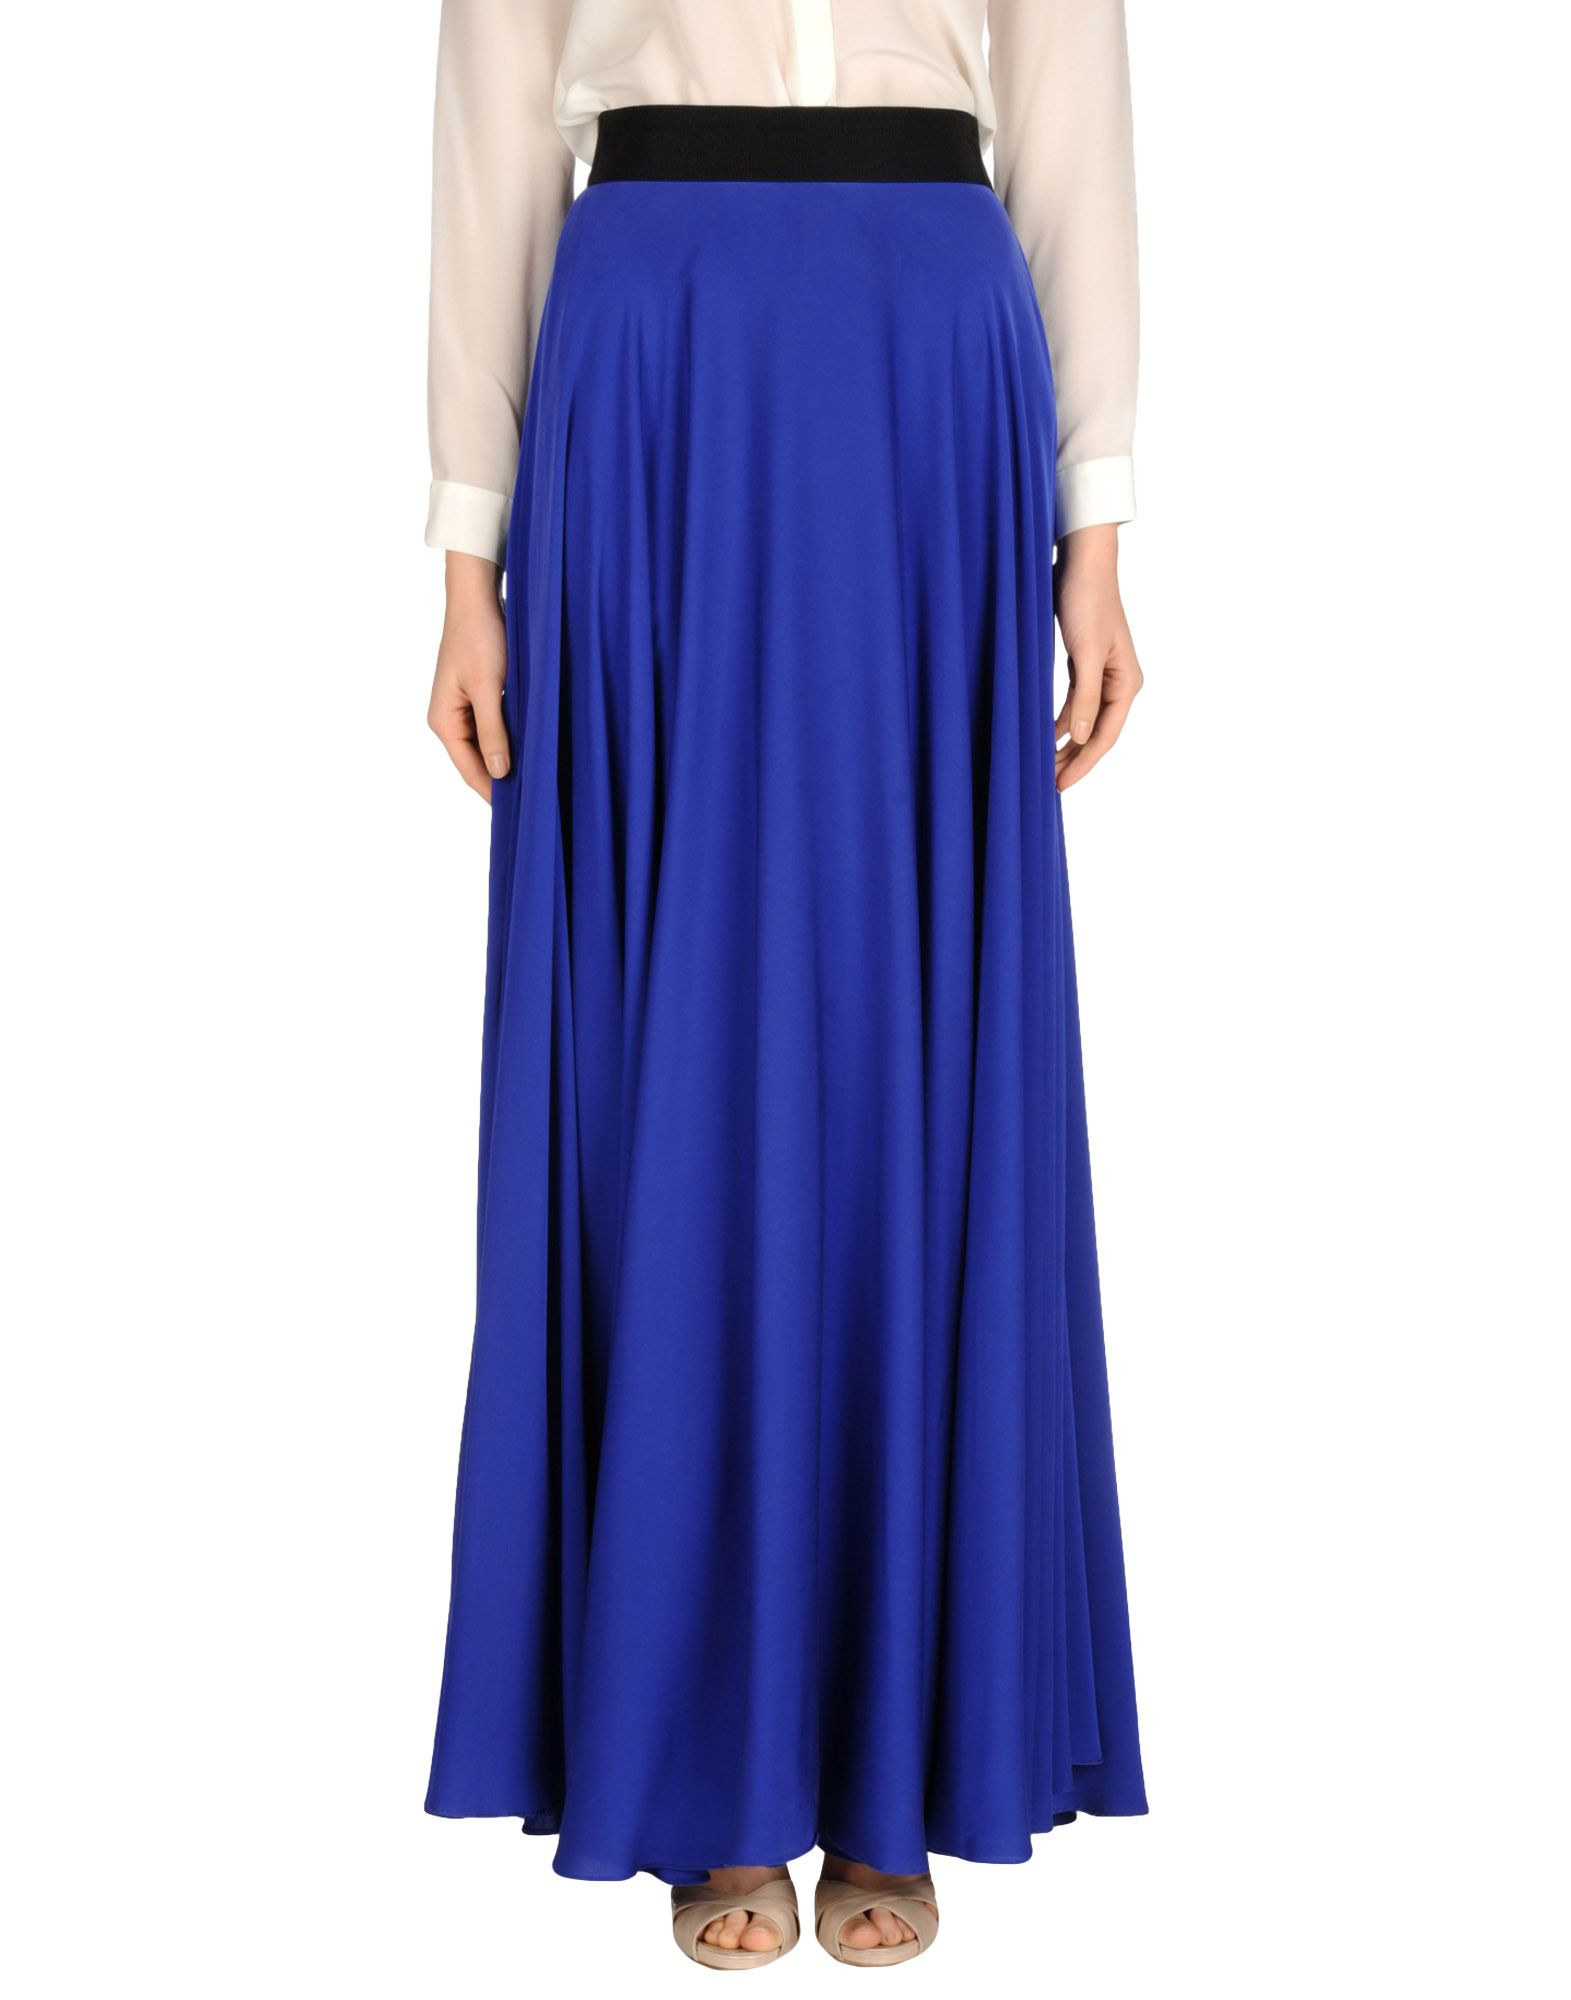 Long Blue Skirt 114